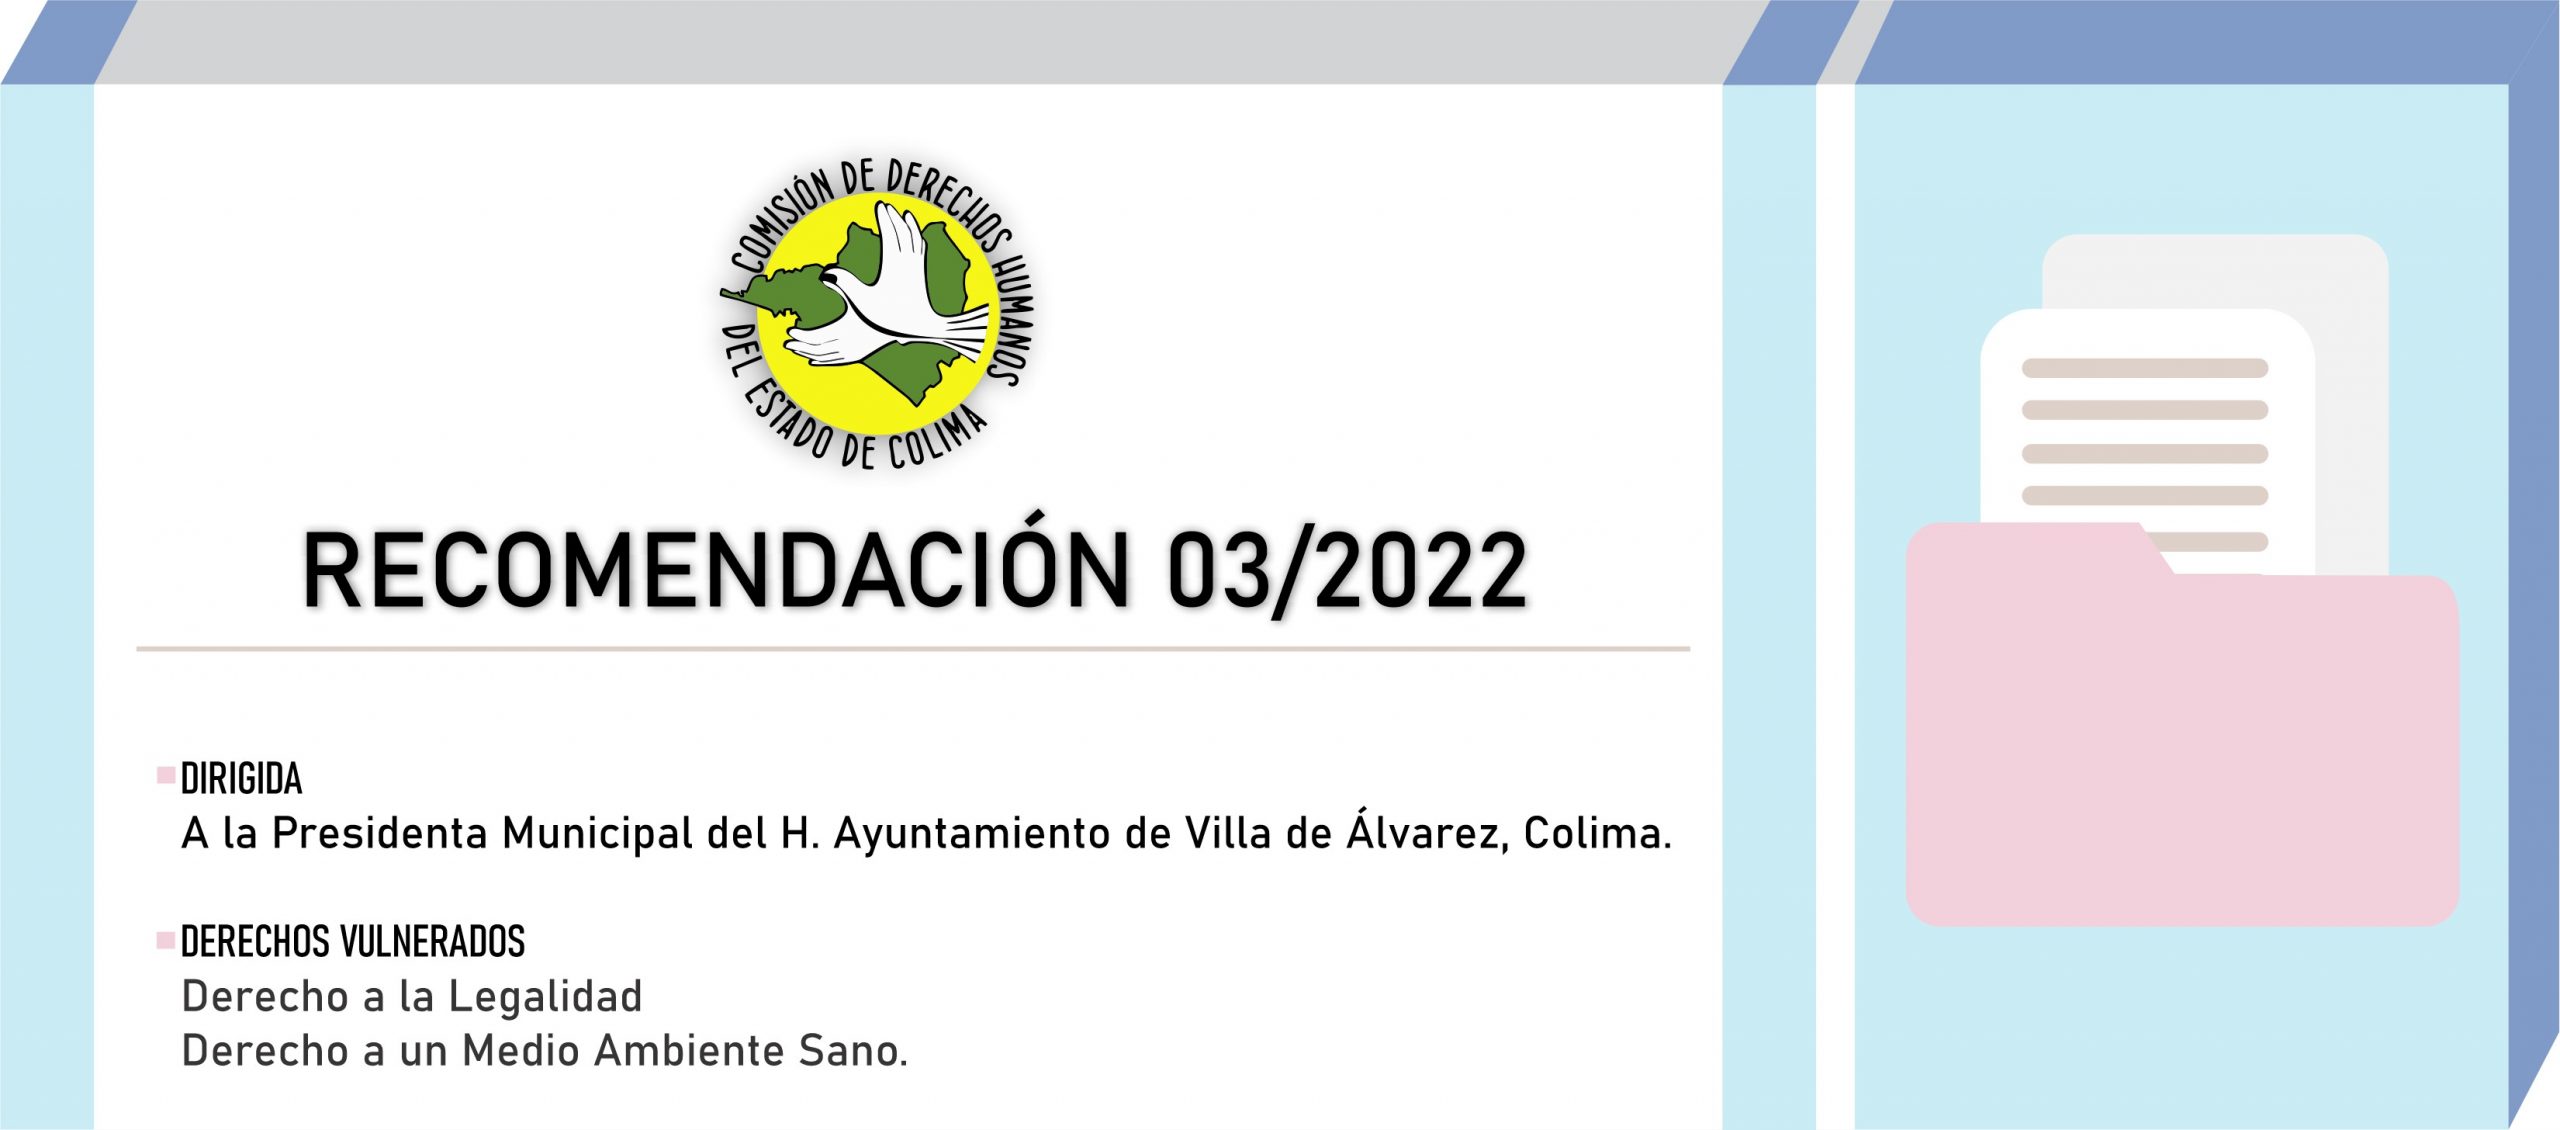 CDHEC emite Recomendación dirigida al Ayuntamiento de Villa de Álvarez